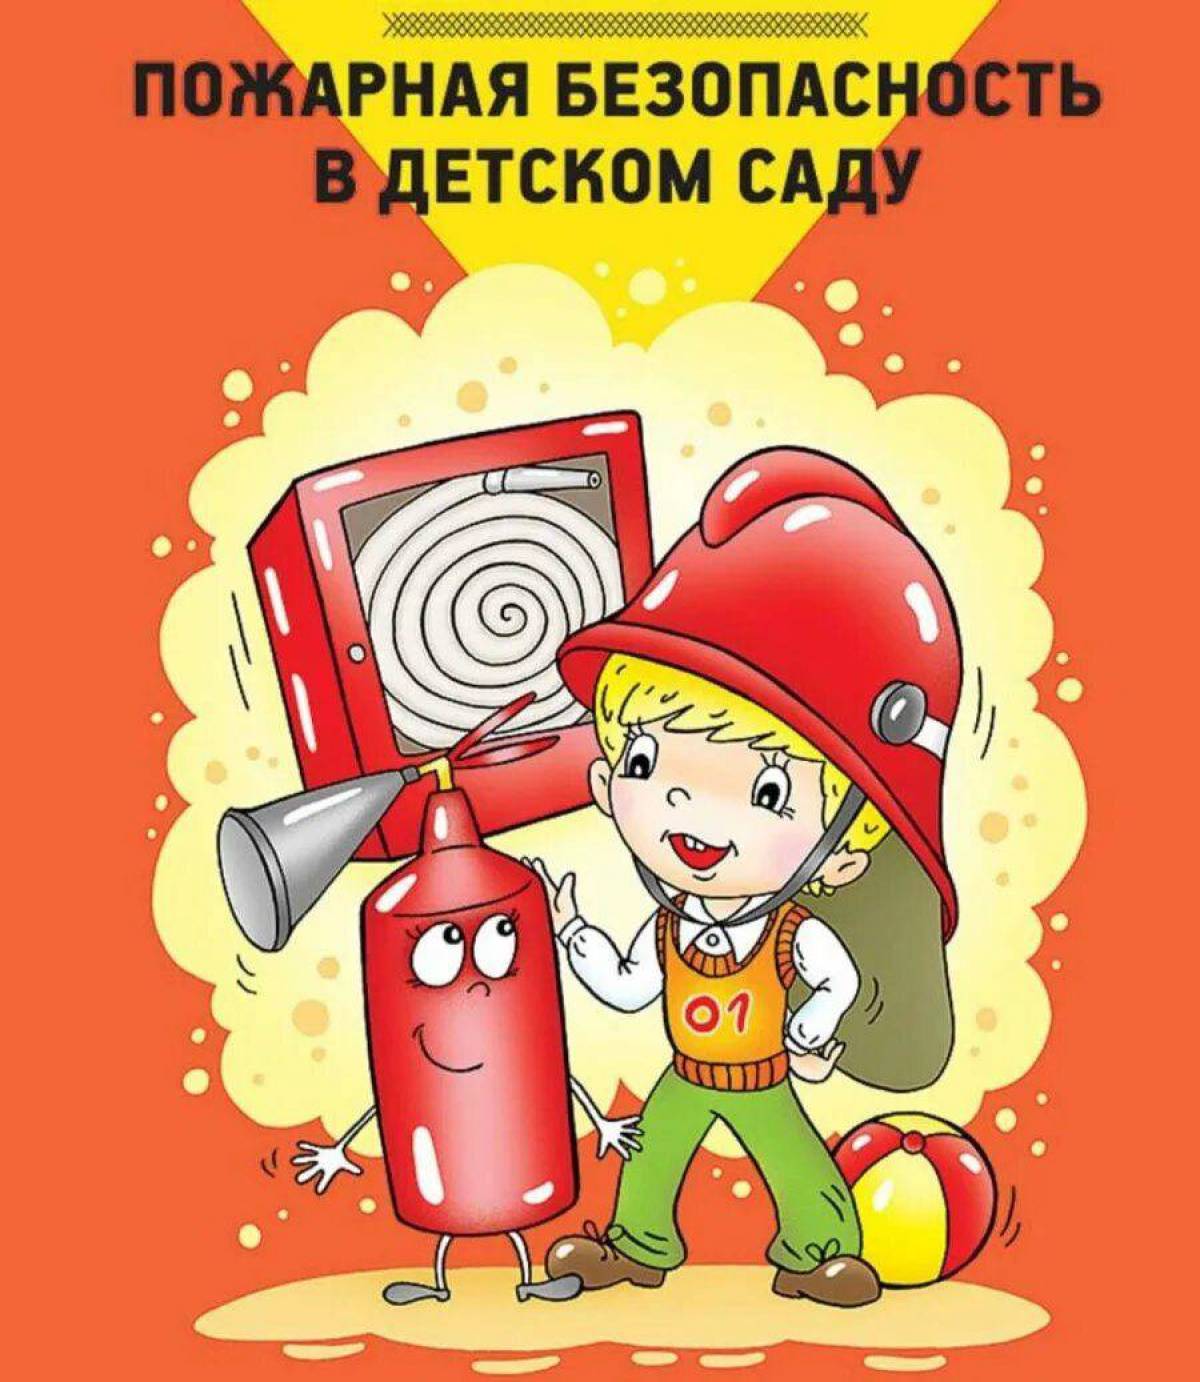 По пожарной безопасности в детском саду #35